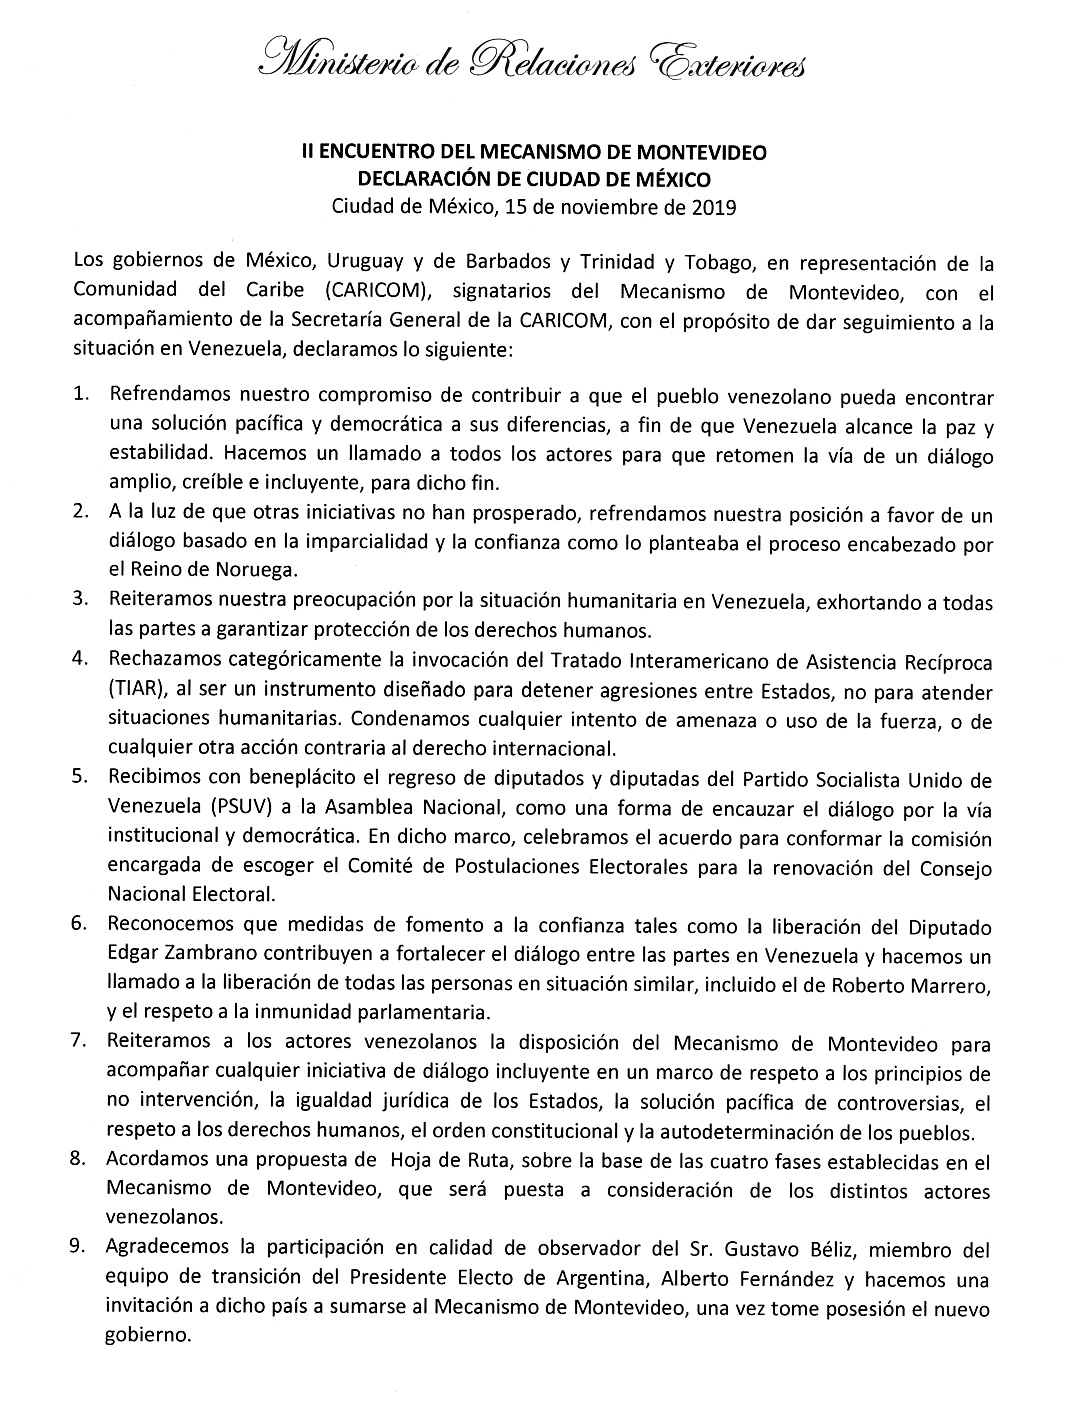 Declaración de Ciudad de México del II Encuentro del Mecanismo de Montevideo - 15.11.2019